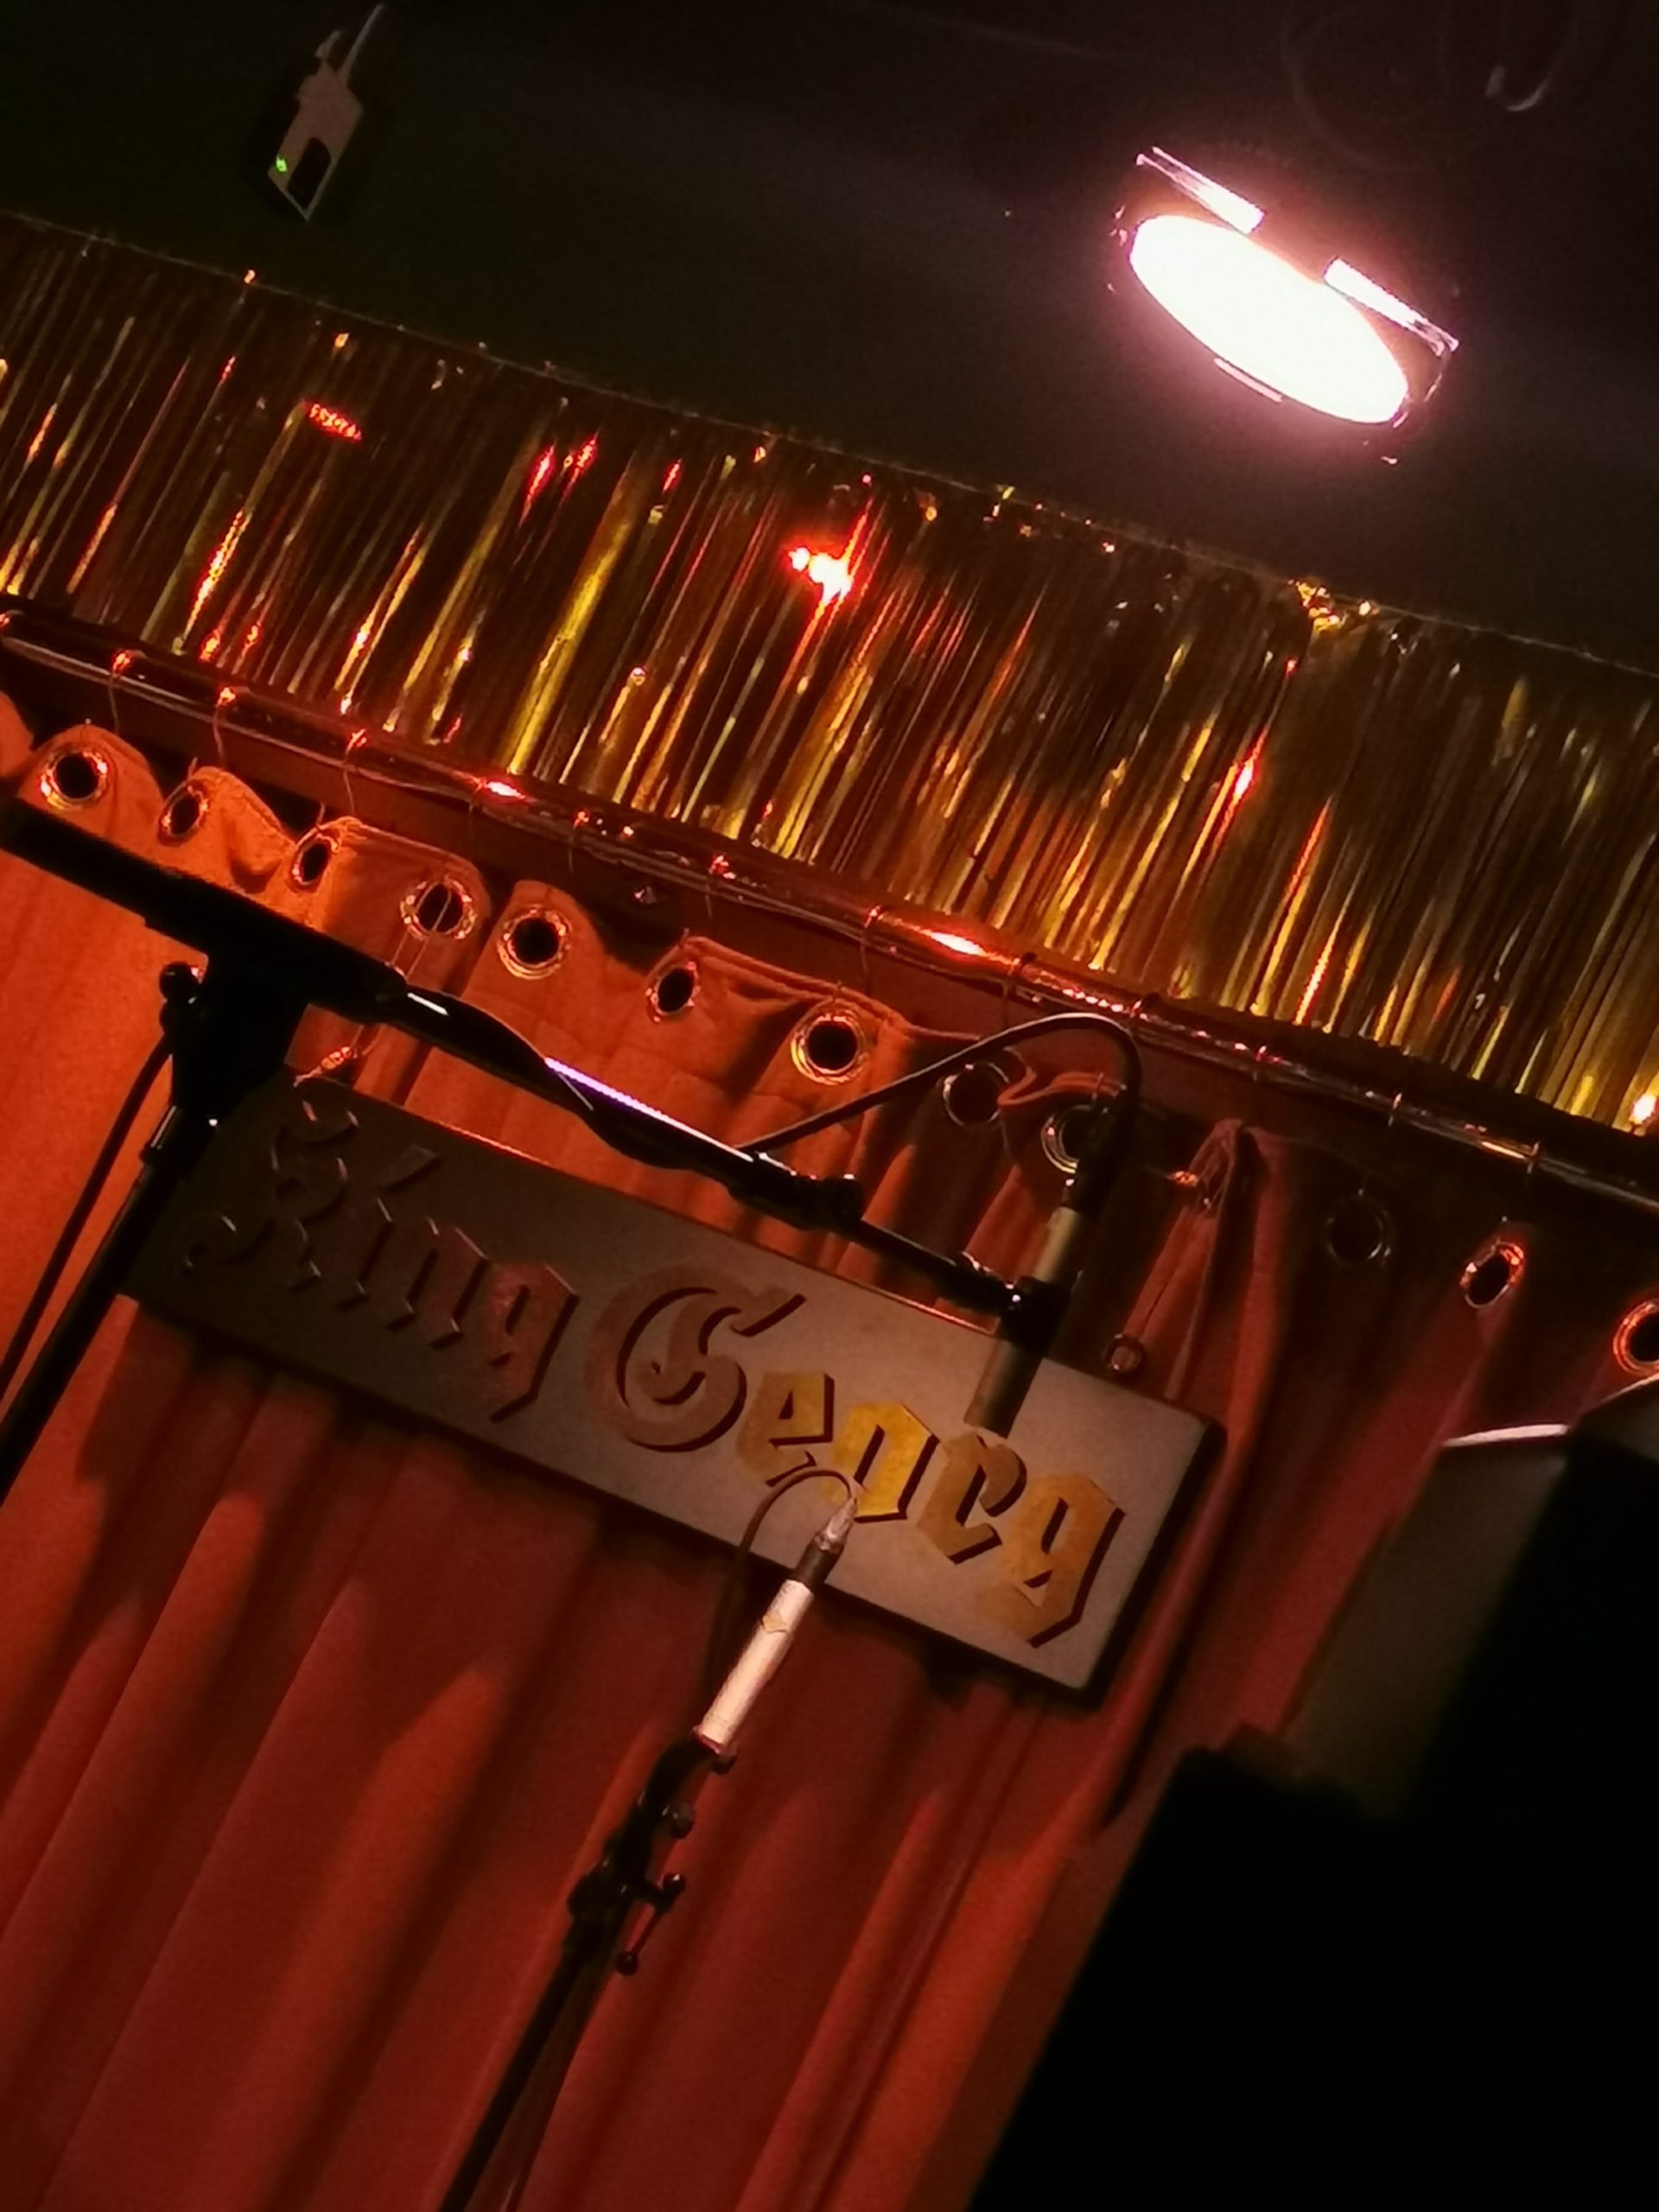 Bild einer Konzertbühne mit einem Mikrophon. Am roten Vorhang hängt das Schild "King Georg".